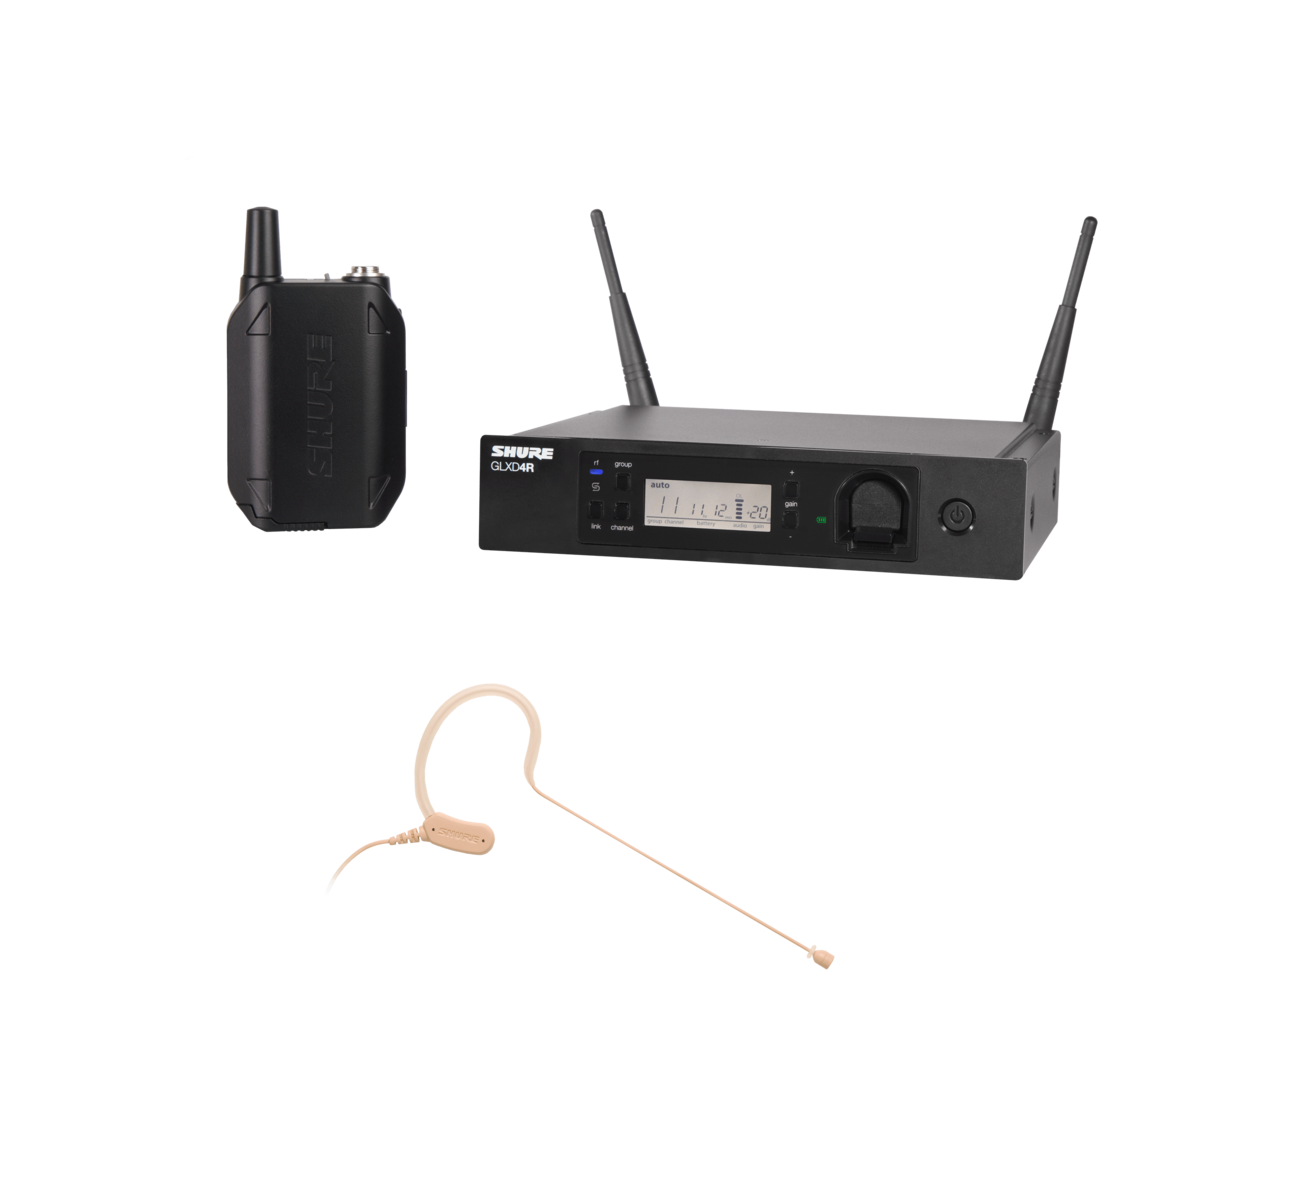 【10月優惠】Shure GLXD14R/MX53 Advanced Digital Wireless Omni Earset Microphone System (2.4 GHz)